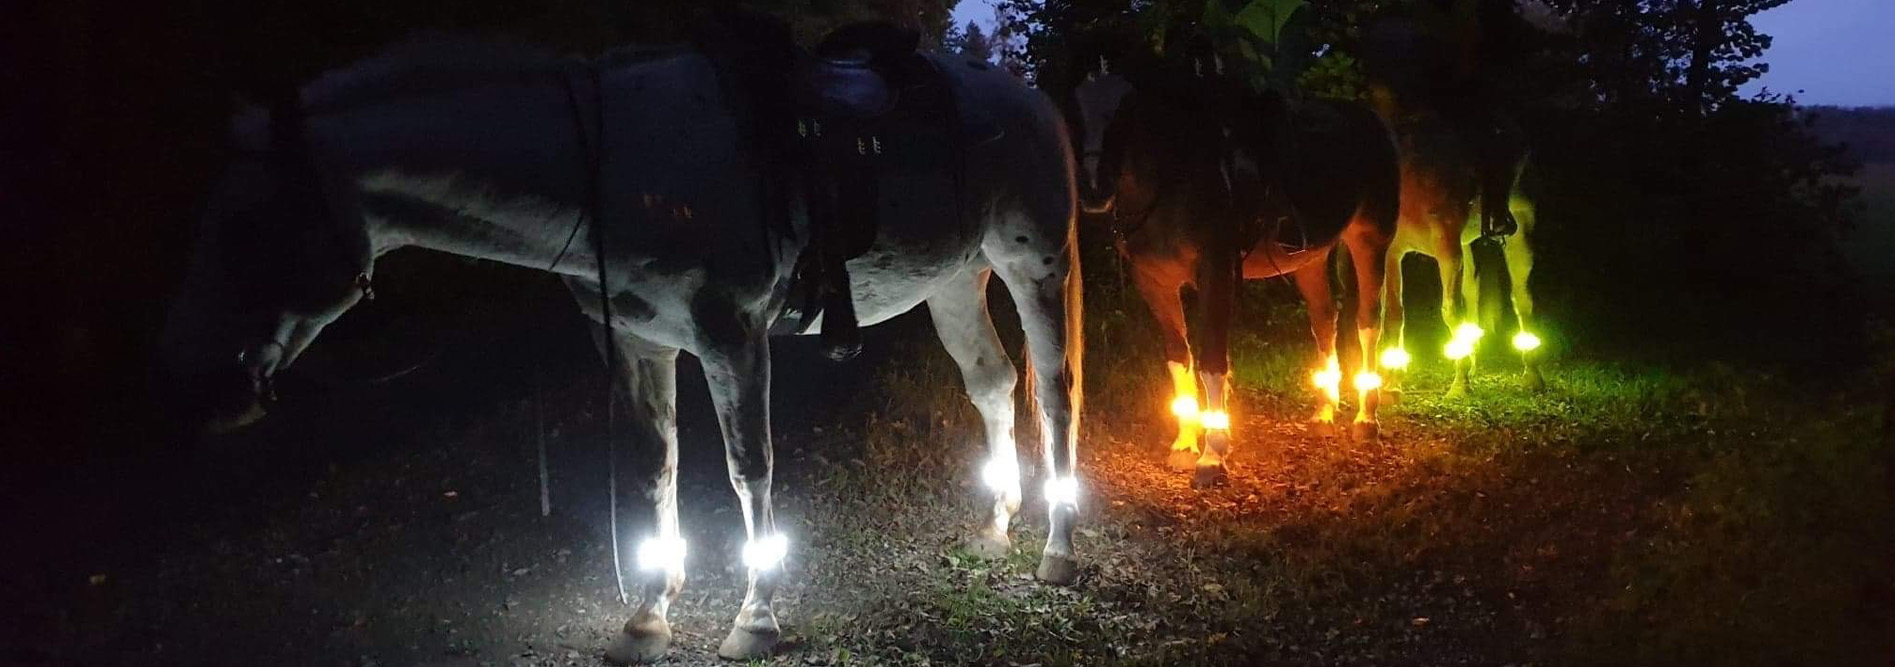 LED-Beleuchtungen für Pferde